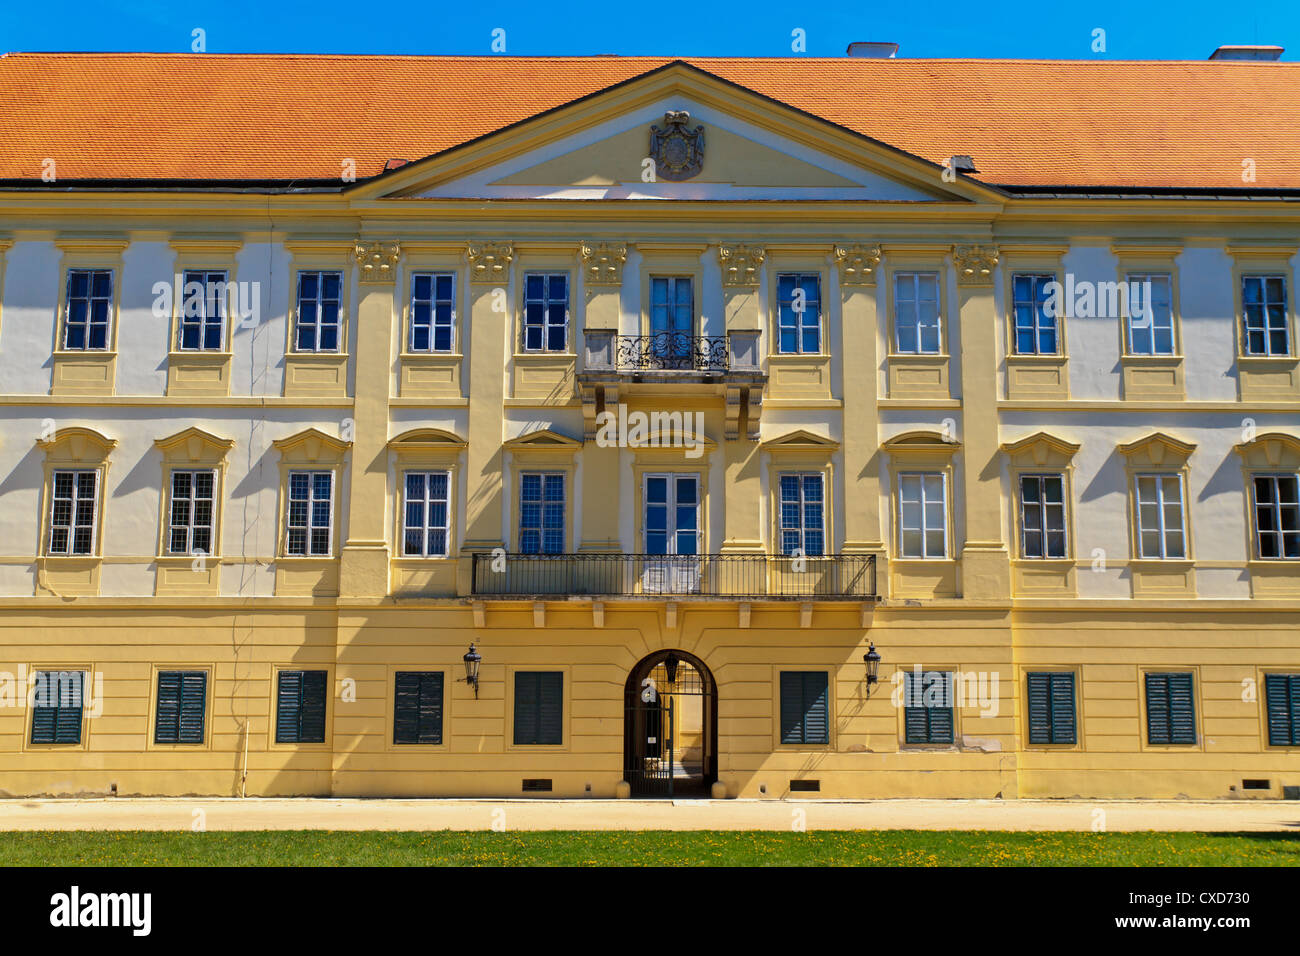 Valtice palace est un des plus impressionnants et le plus visité des sites touristiques de la République tchèque Banque D'Images